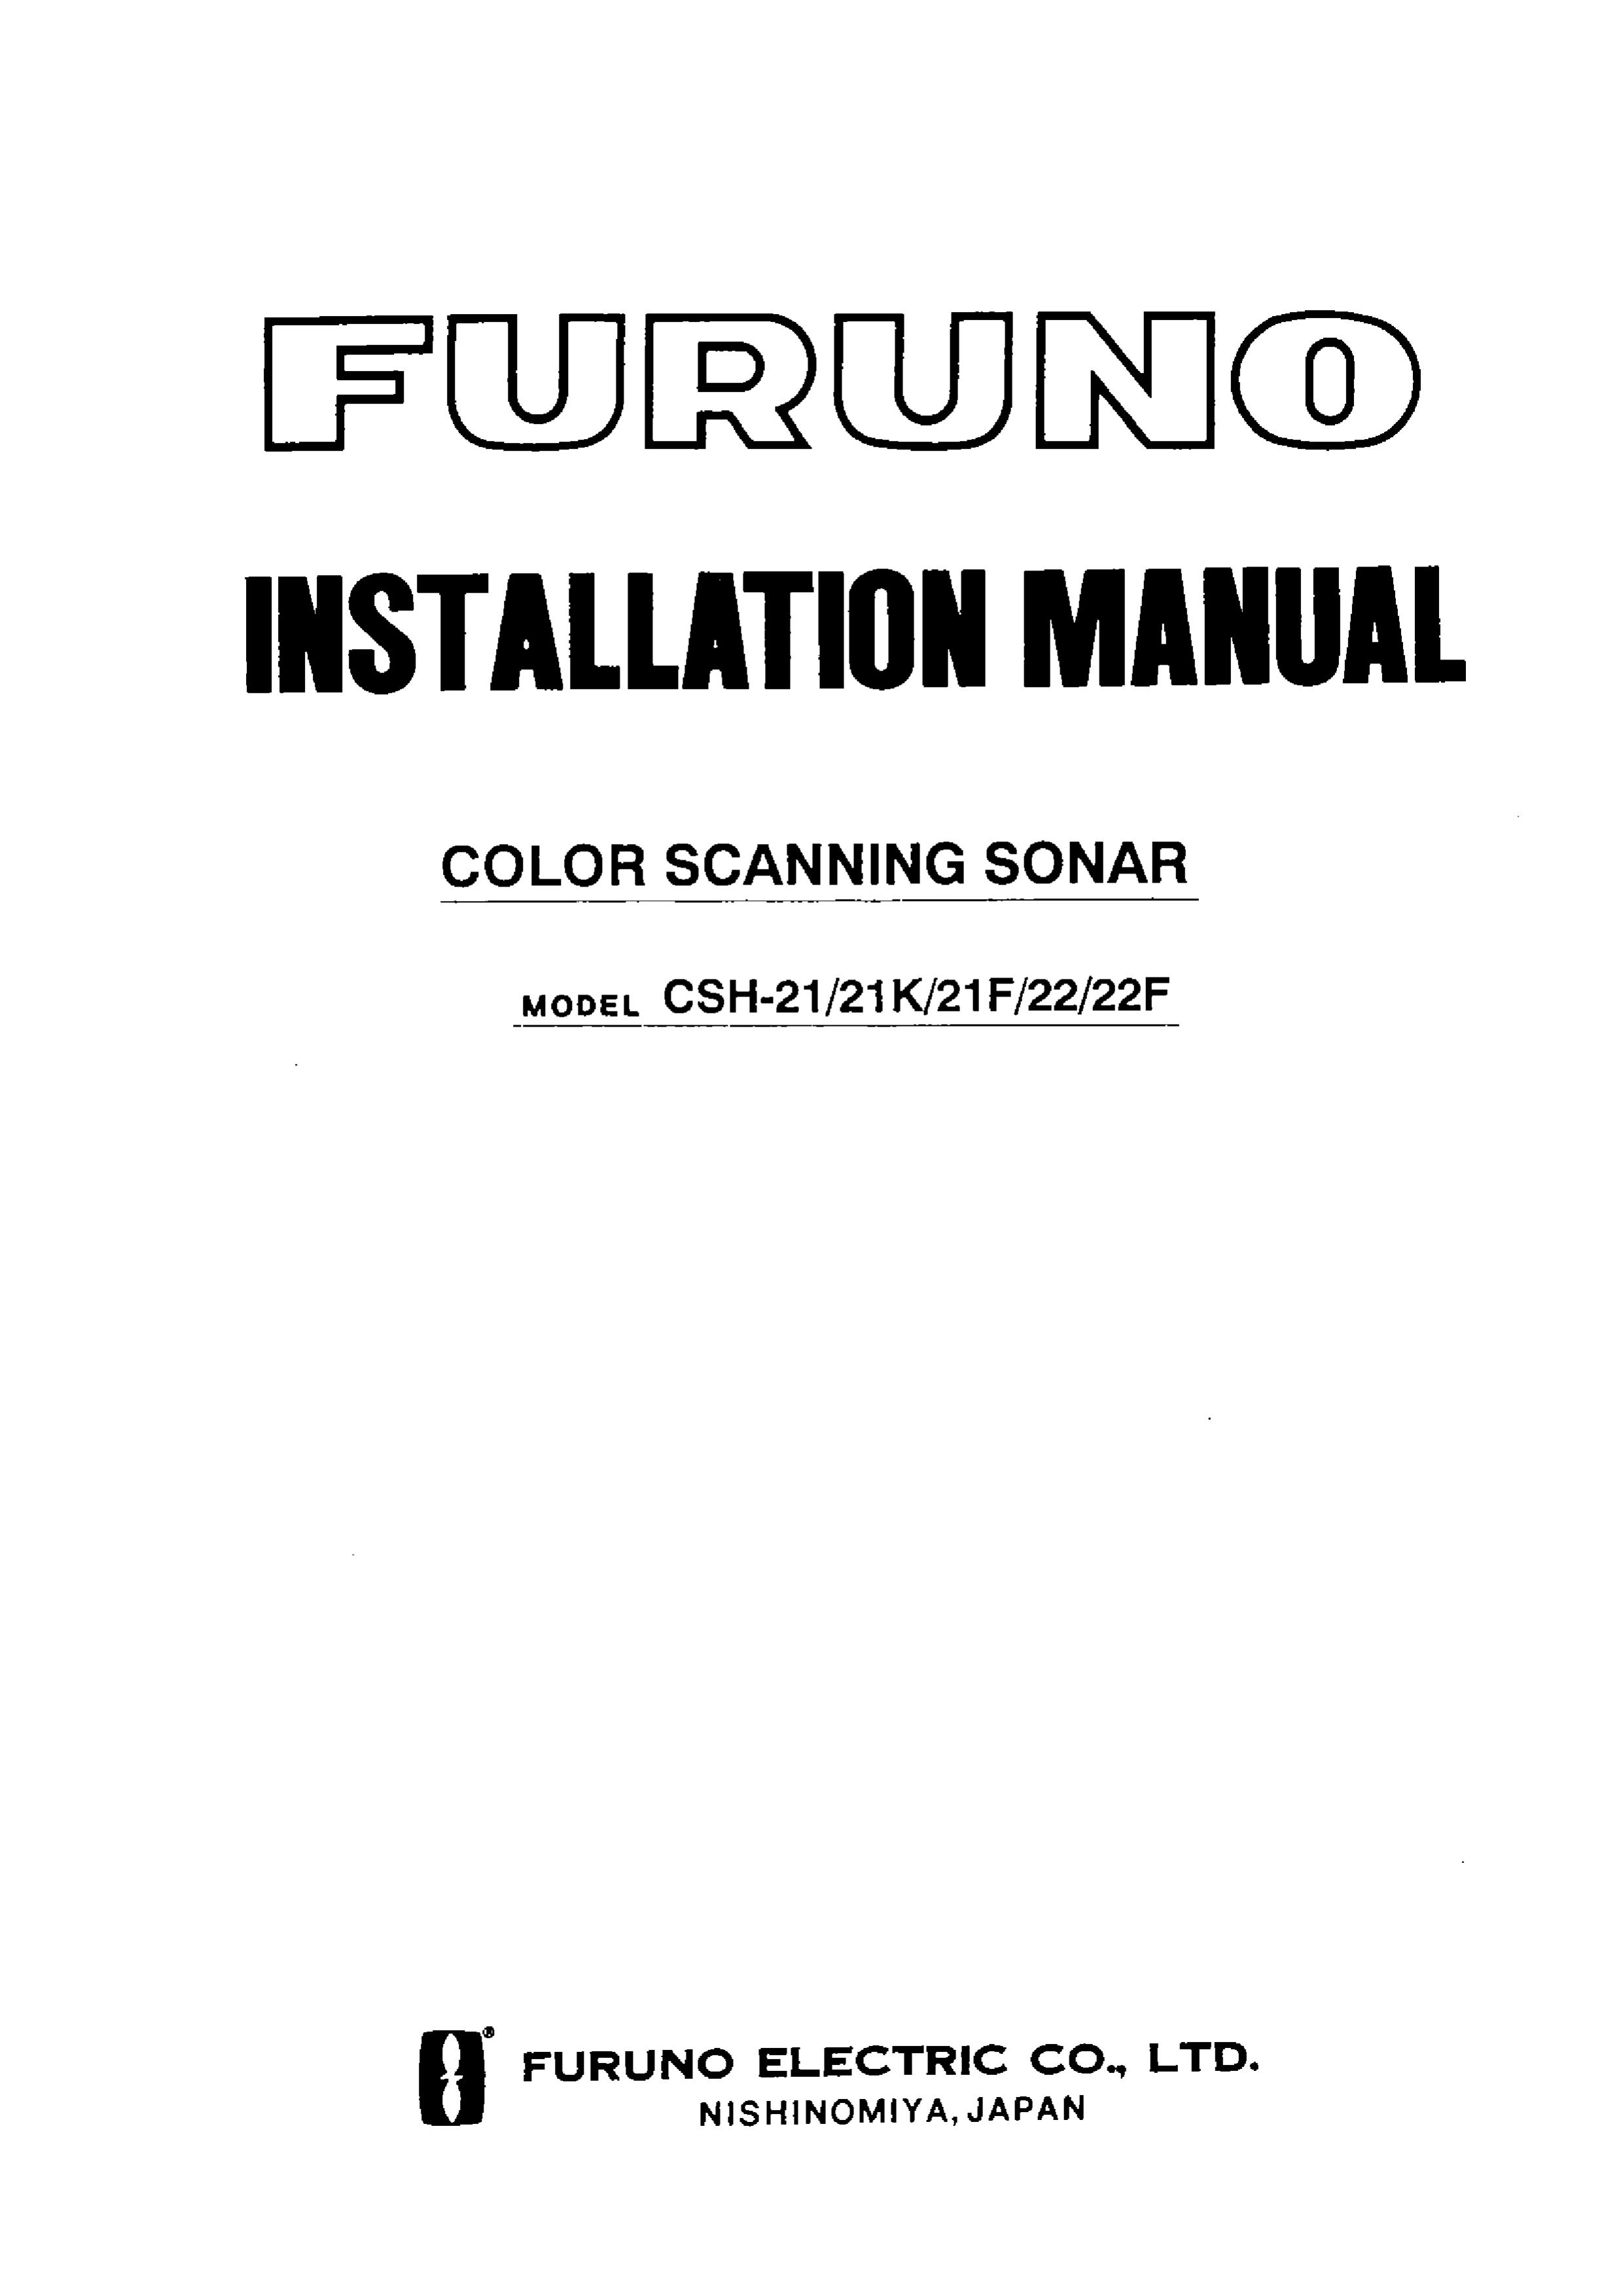 Furuno CSH-22F SONAR User Manual